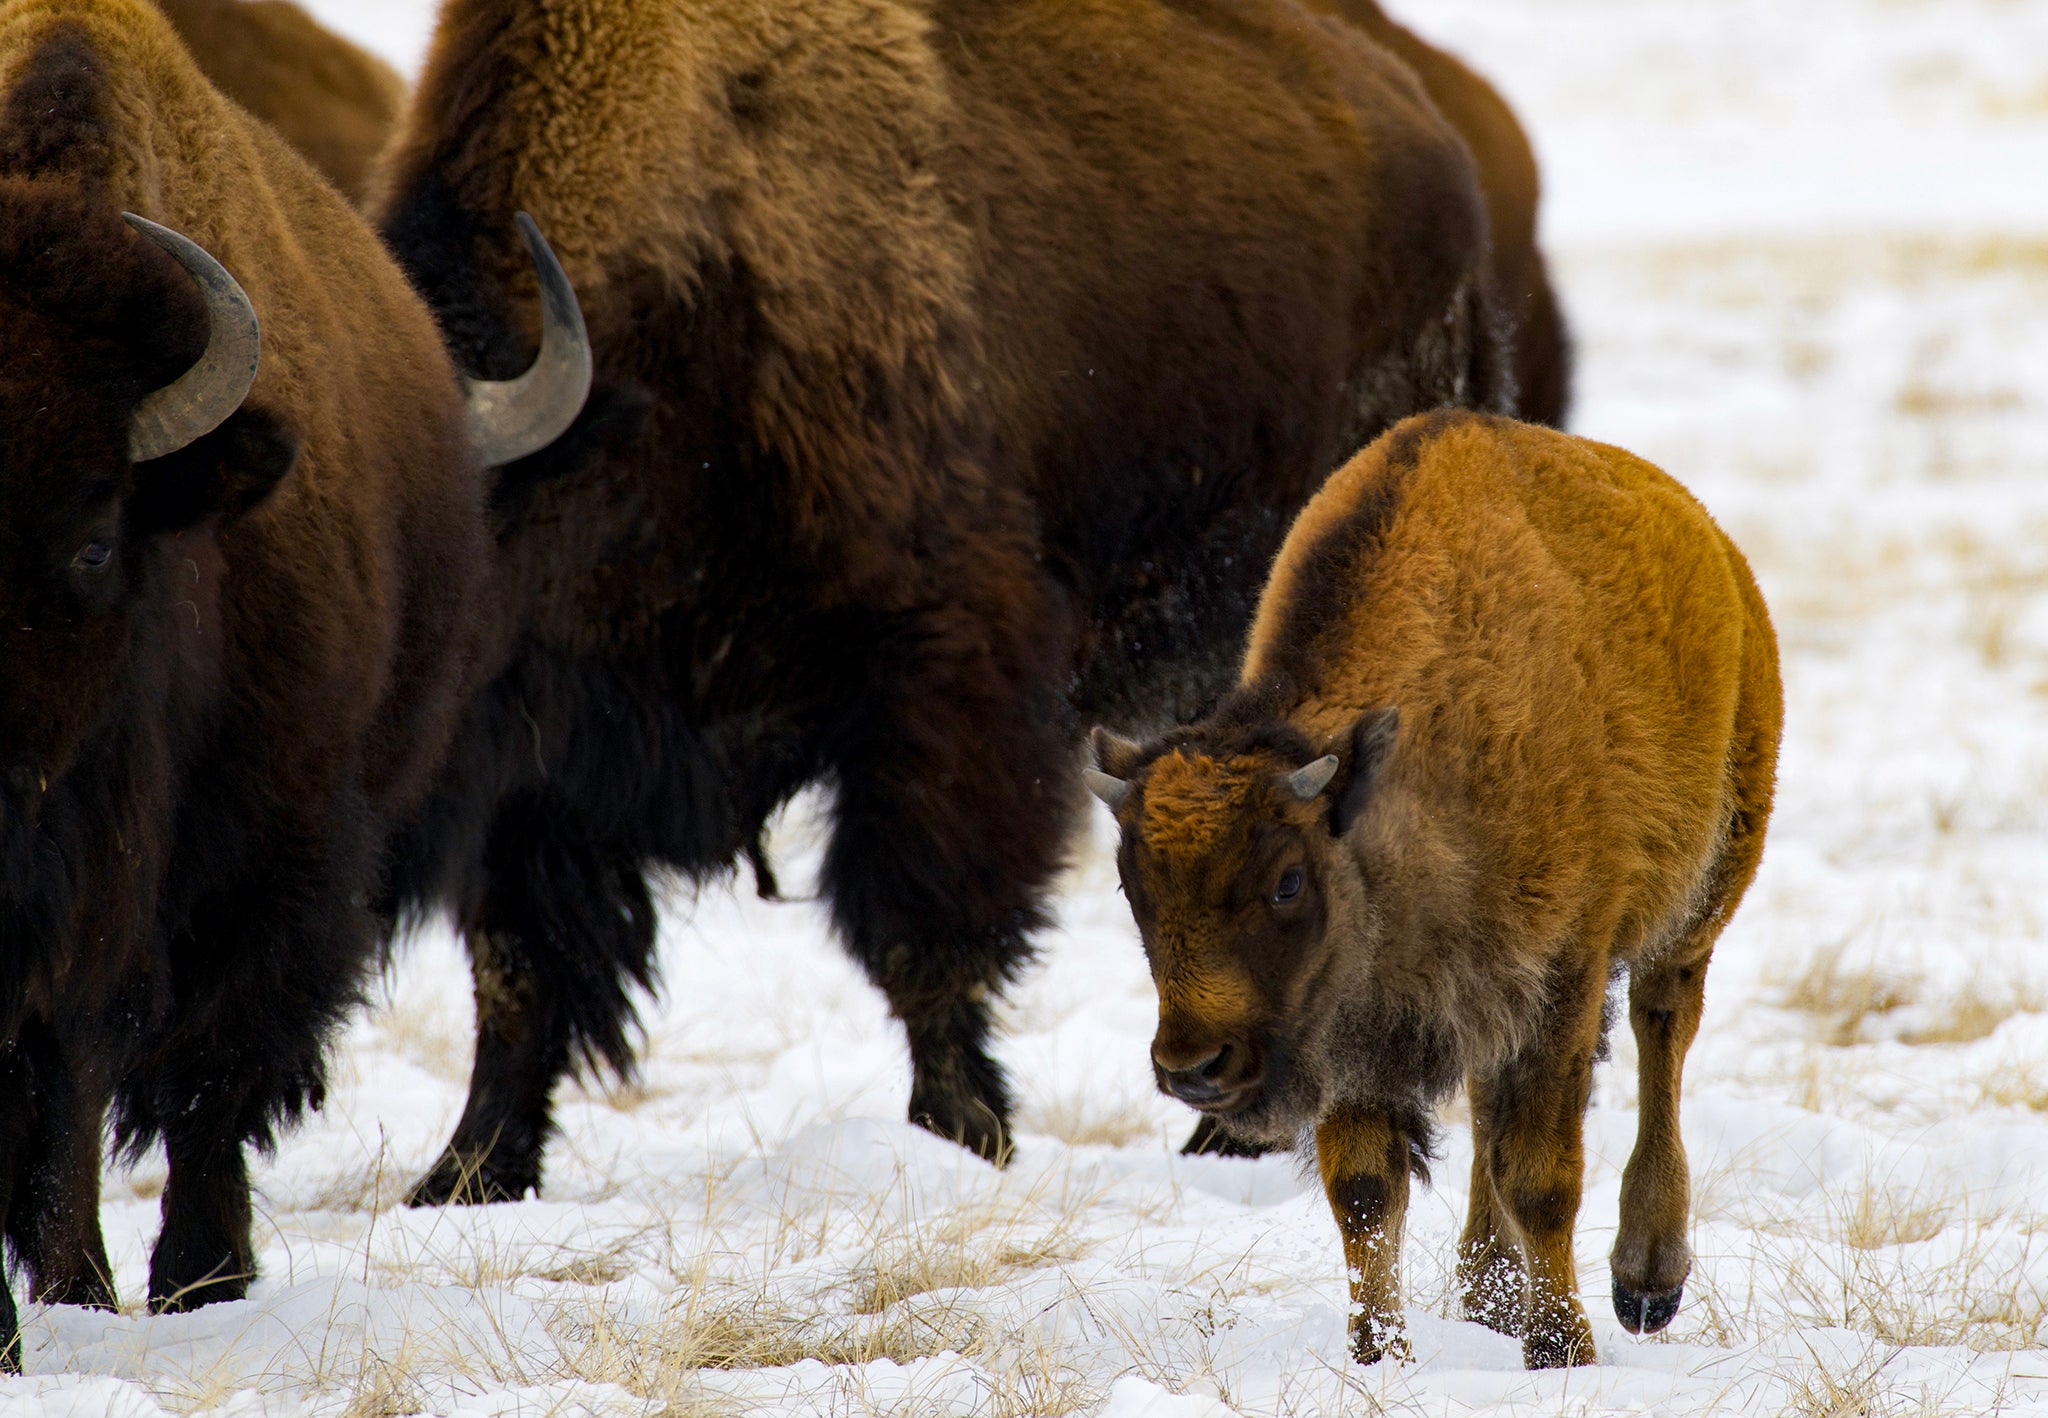 buffalo walking through the snow with a winter calf